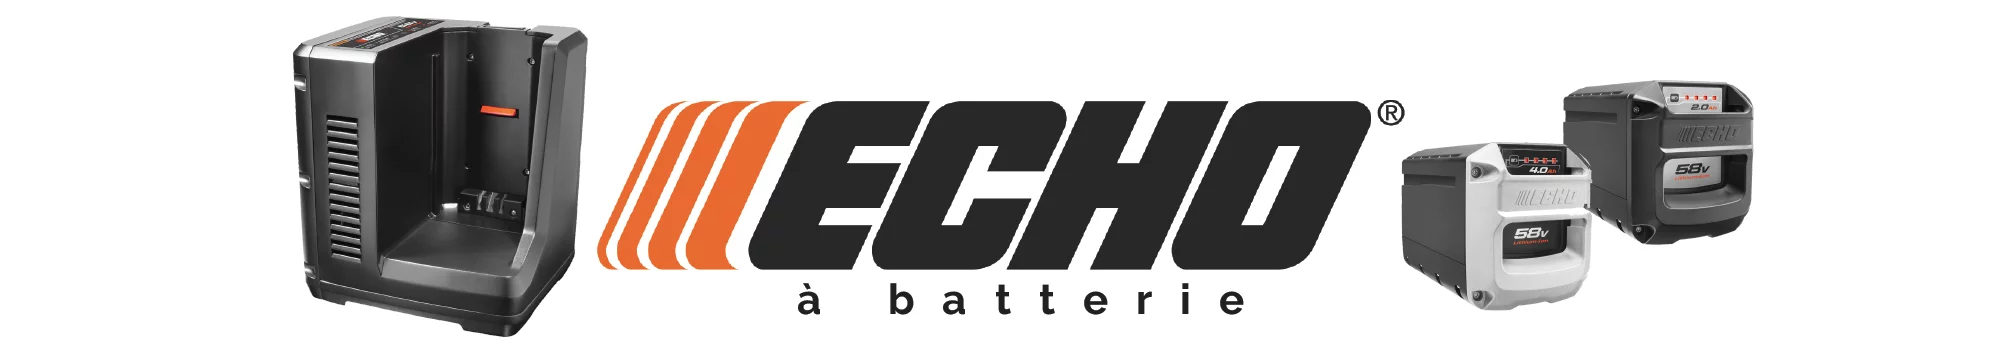 ECHO à batterie - D mini moteurs - Chomedey - Laval